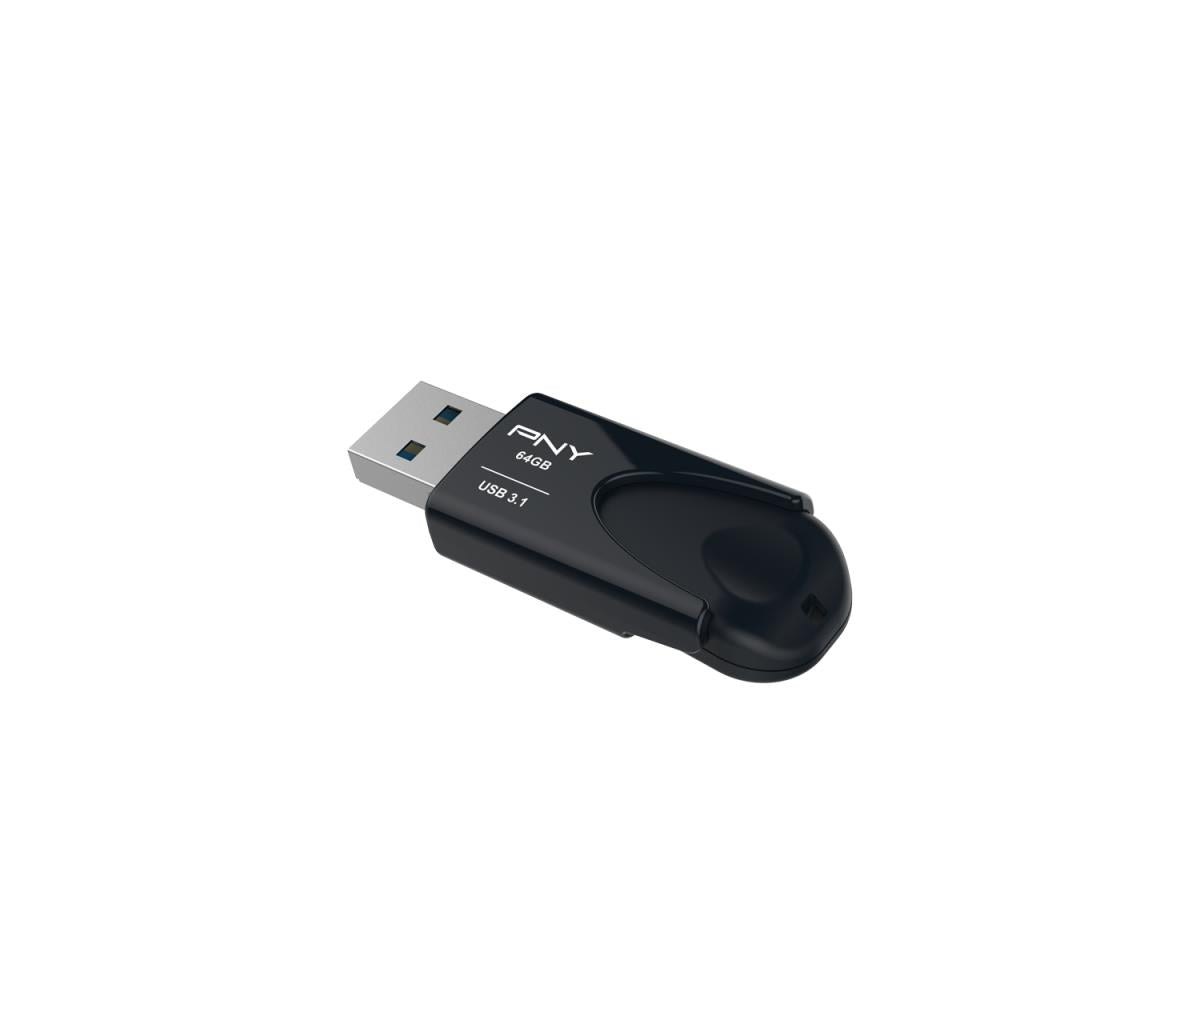 PNY Attache 4 3.1 64GB USB Stick USB 3.1